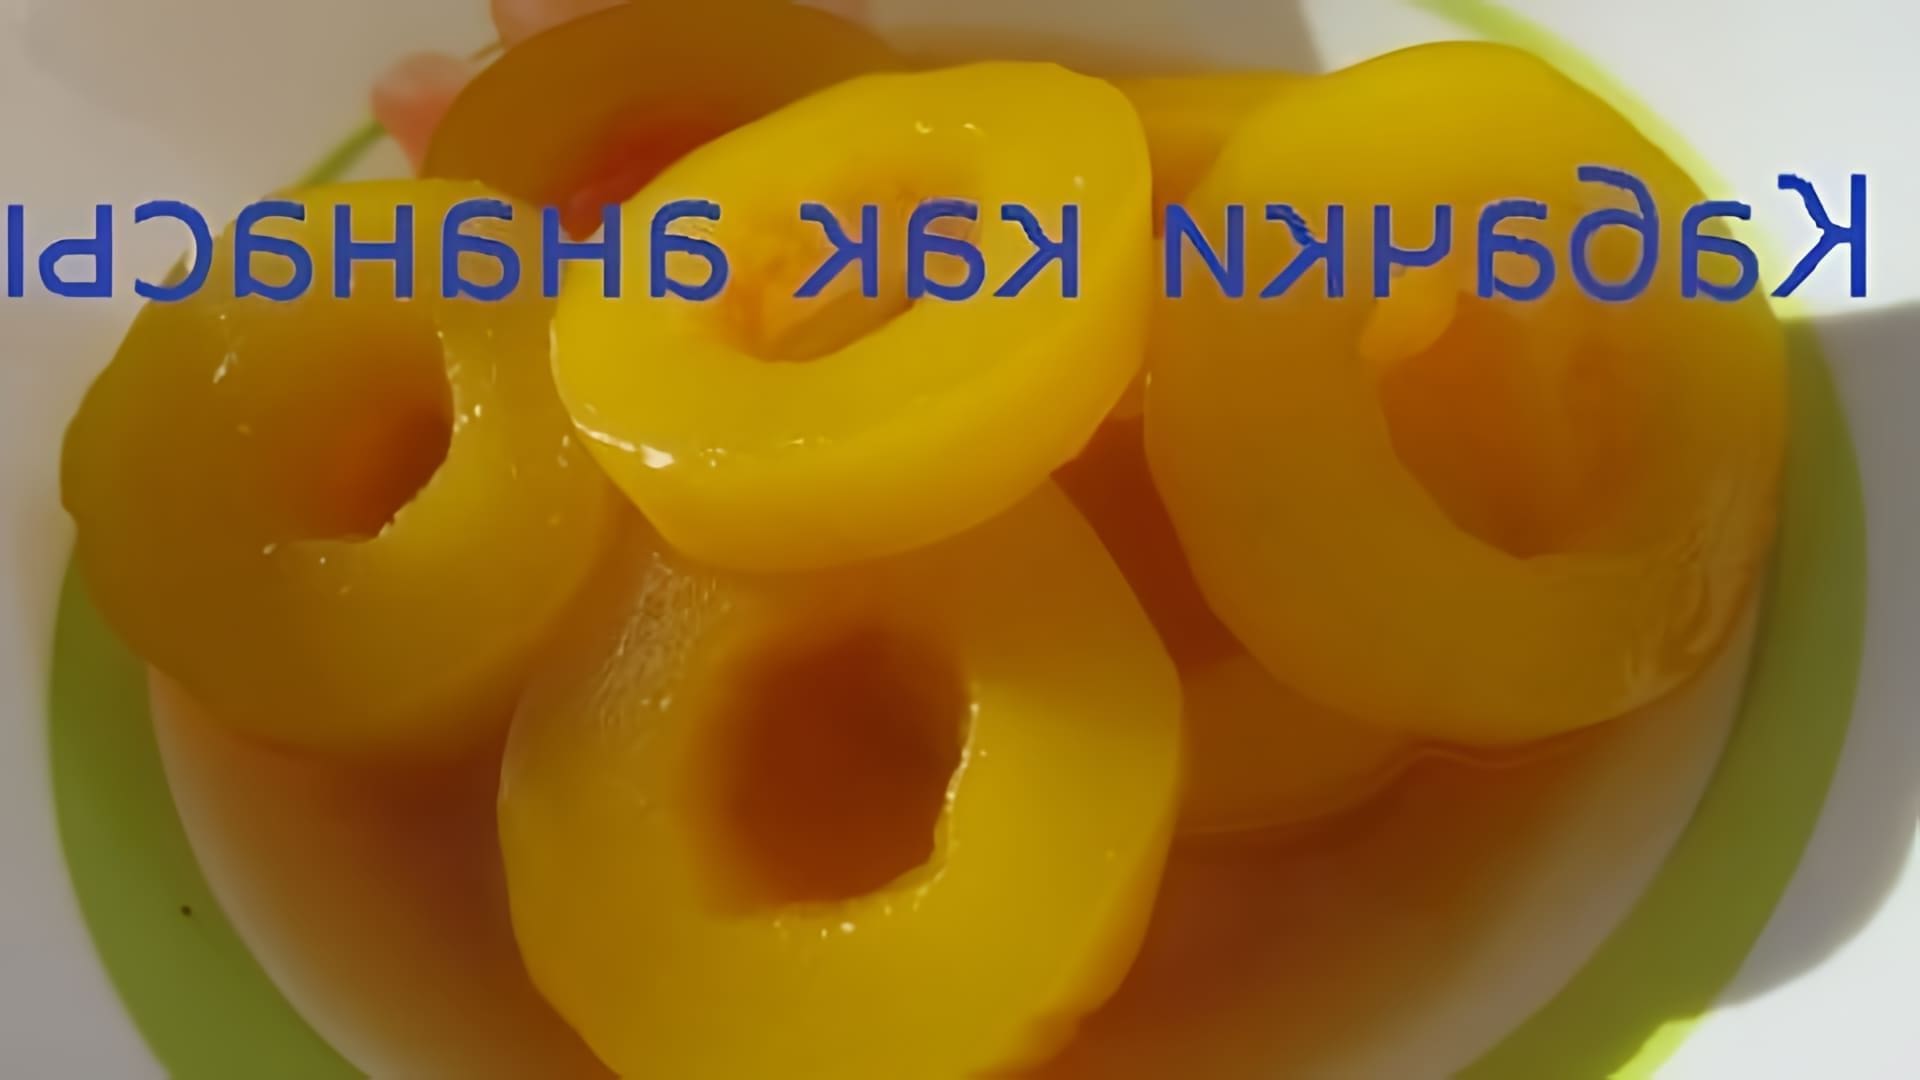 В этом видео демонстрируется процесс приготовления кабачков, которые выглядят и пахнут как ананасы